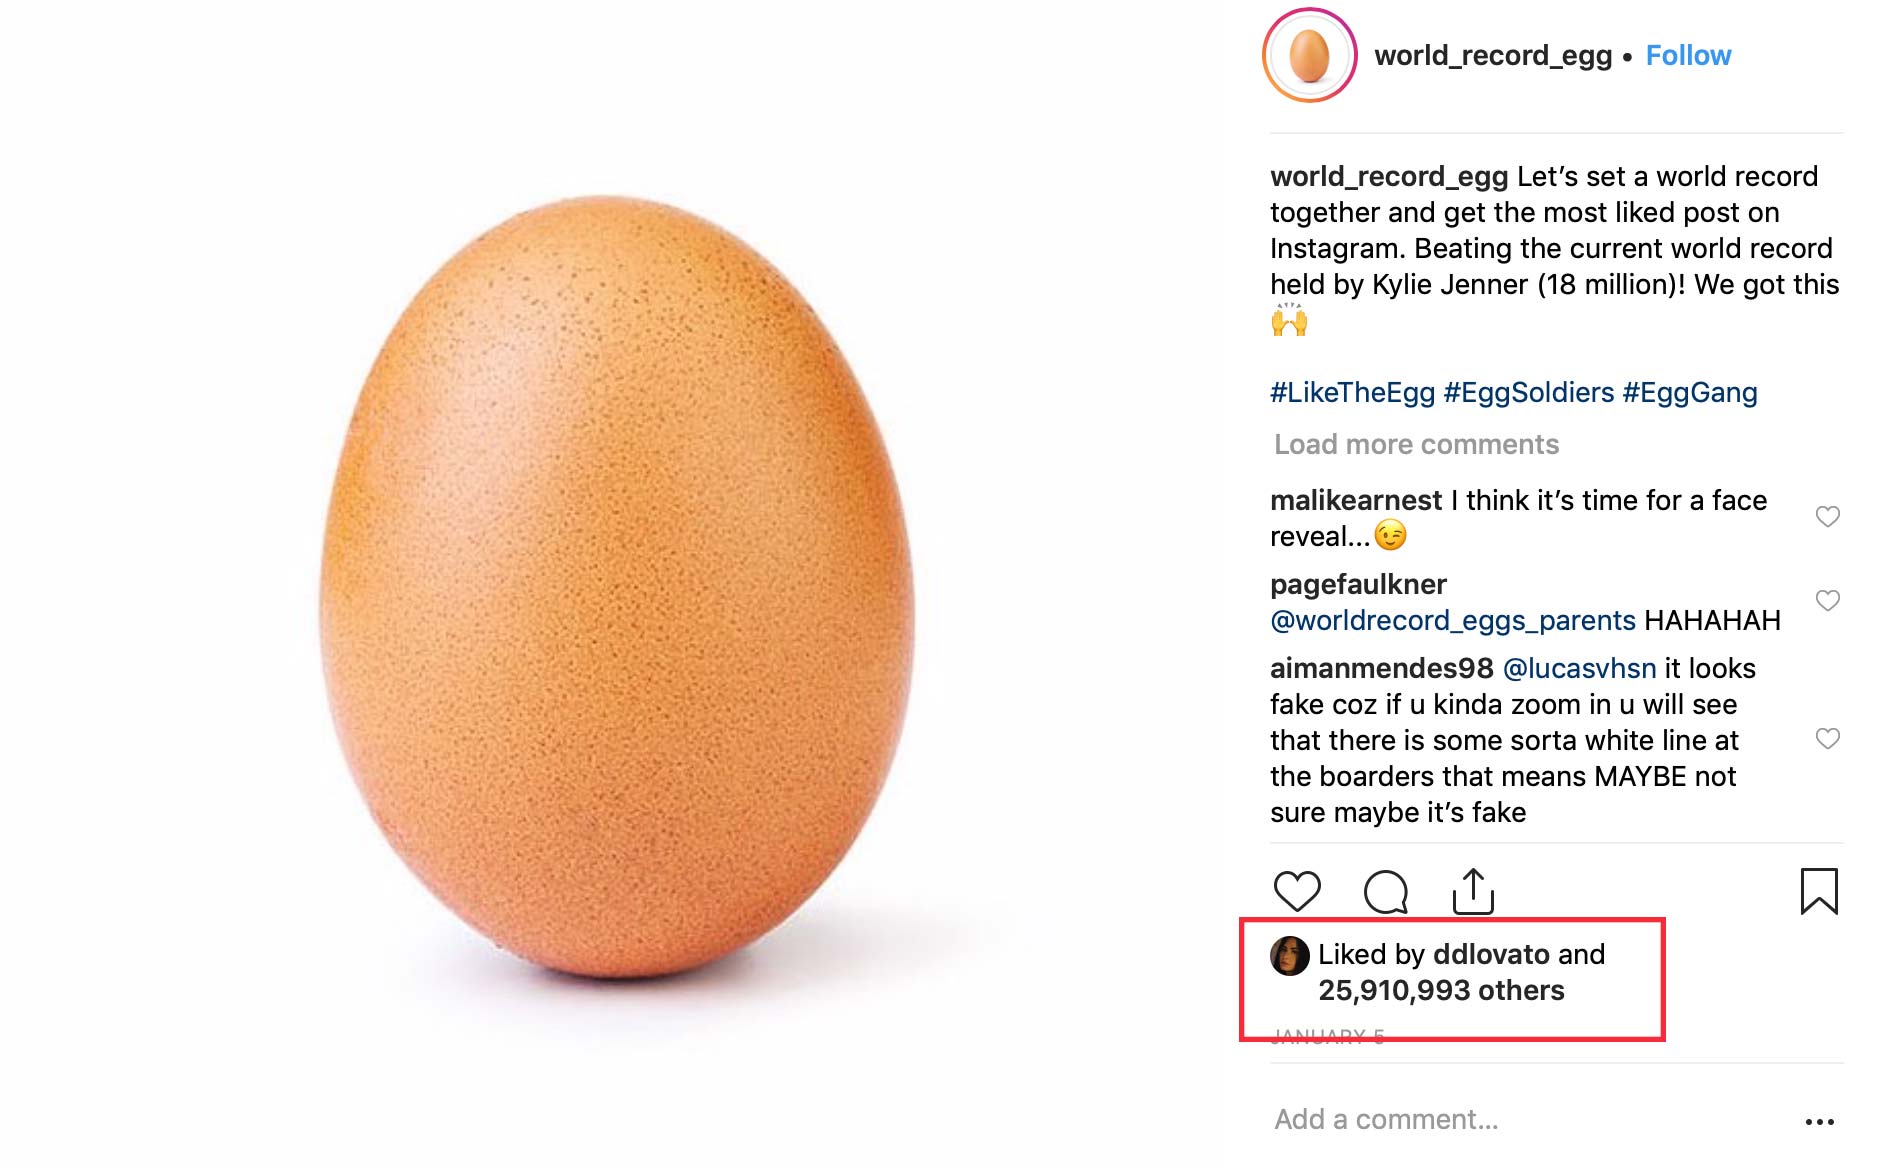 Kỷ lục bức ảnh được nhiều lượt thích nhất trên Instagram: trứng gà 26 triệu like!